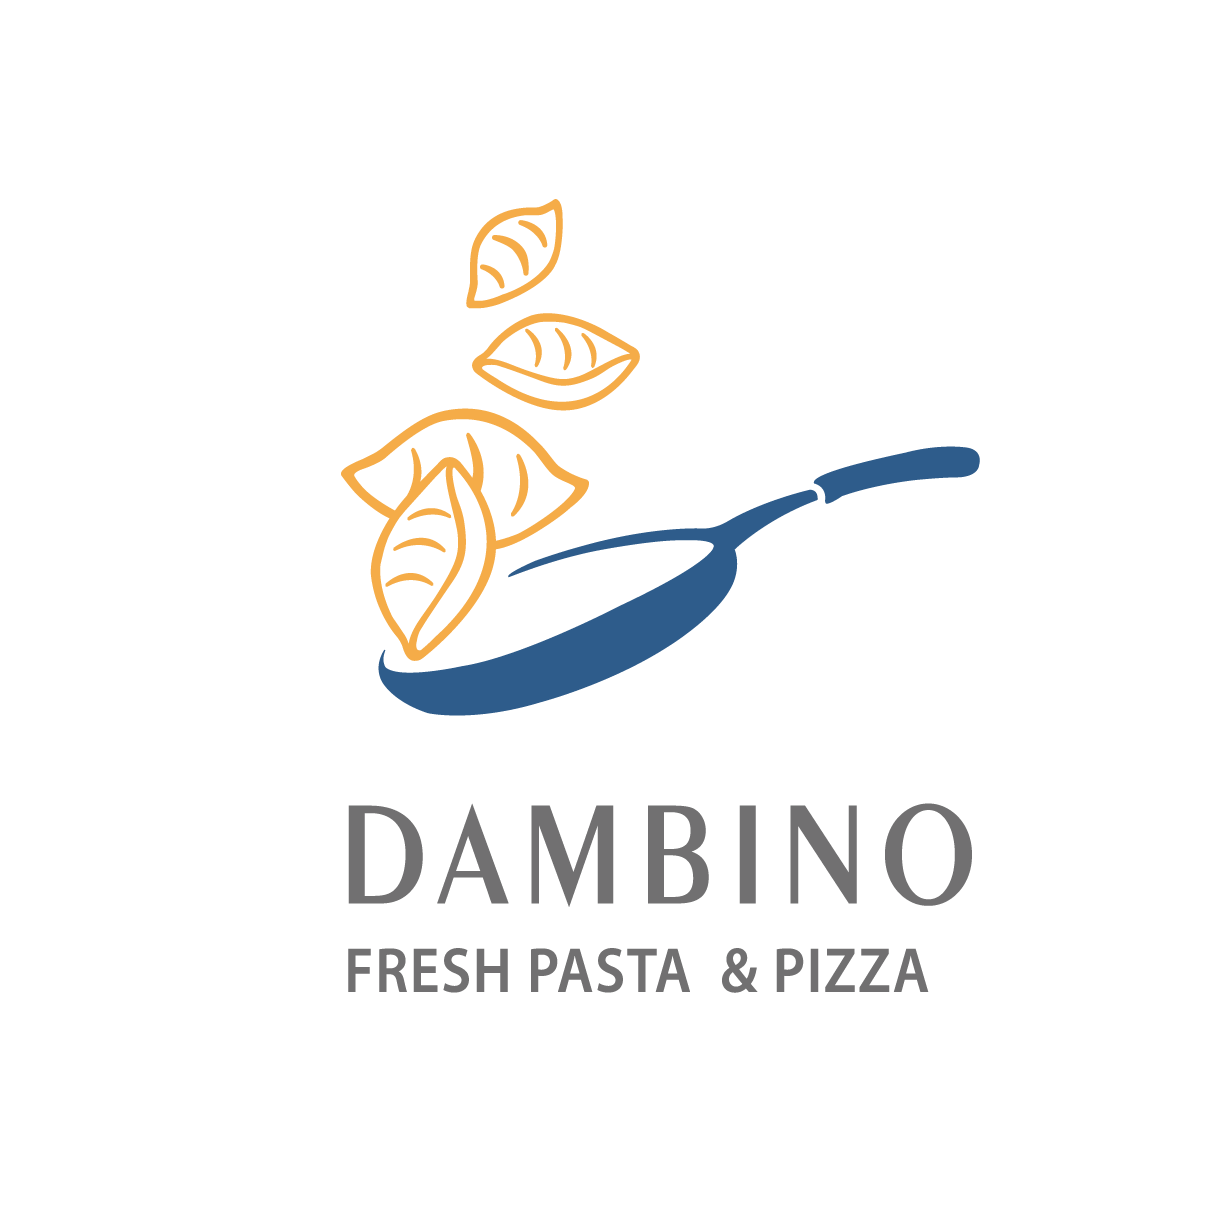 丹比诺手工意大利餐厅